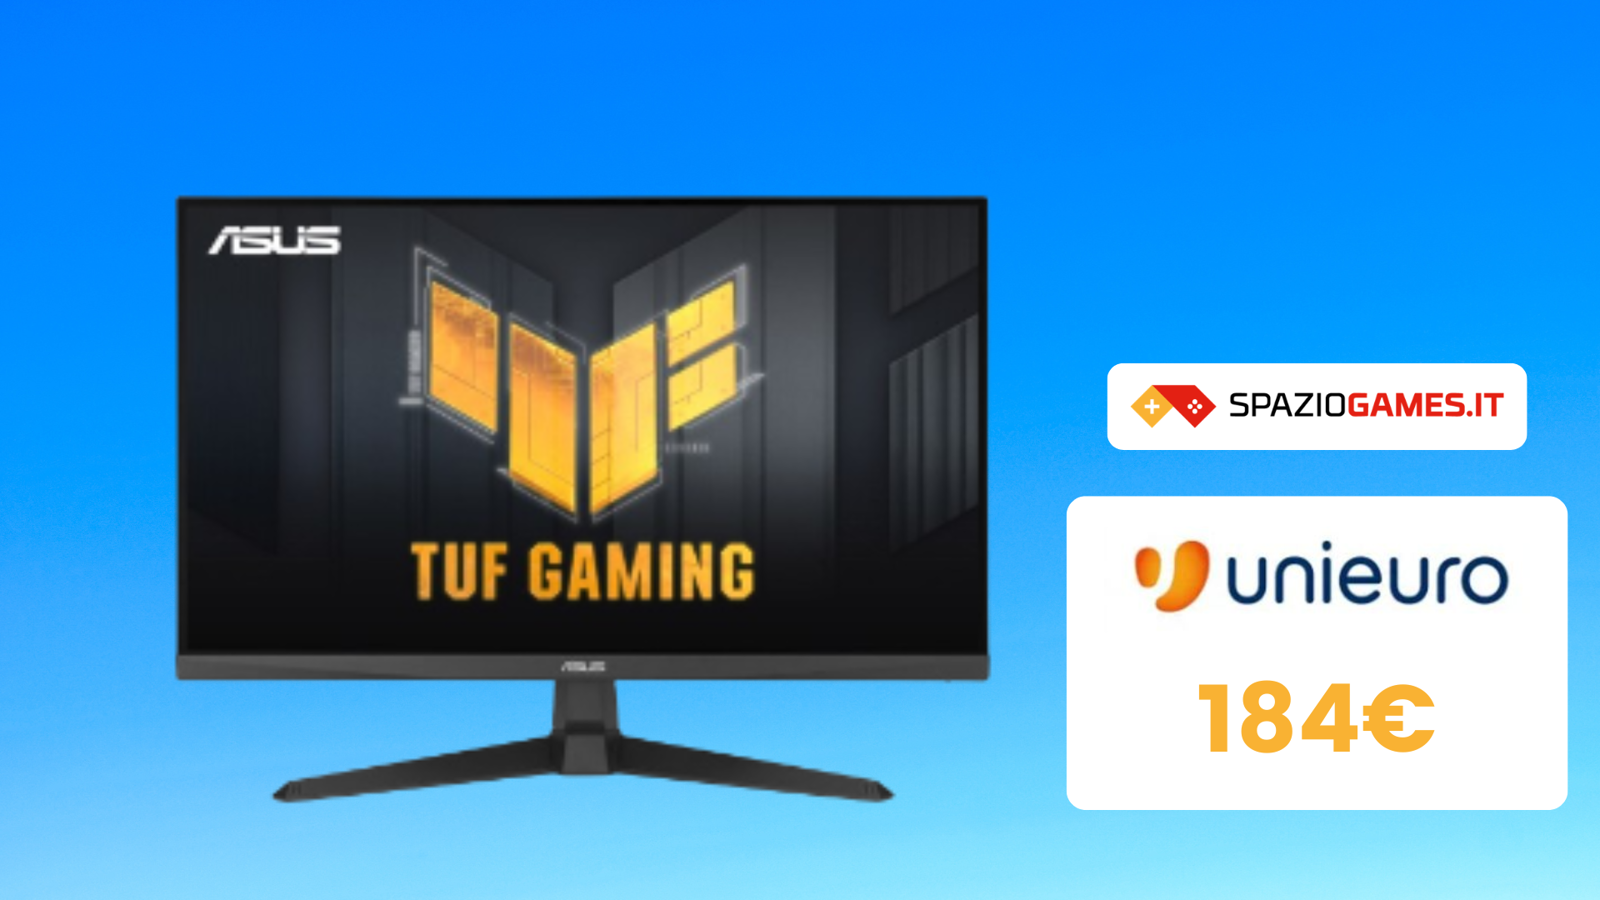 Monitor ASUS TUF Gaming da 27” a soli 184€: e si gioca!